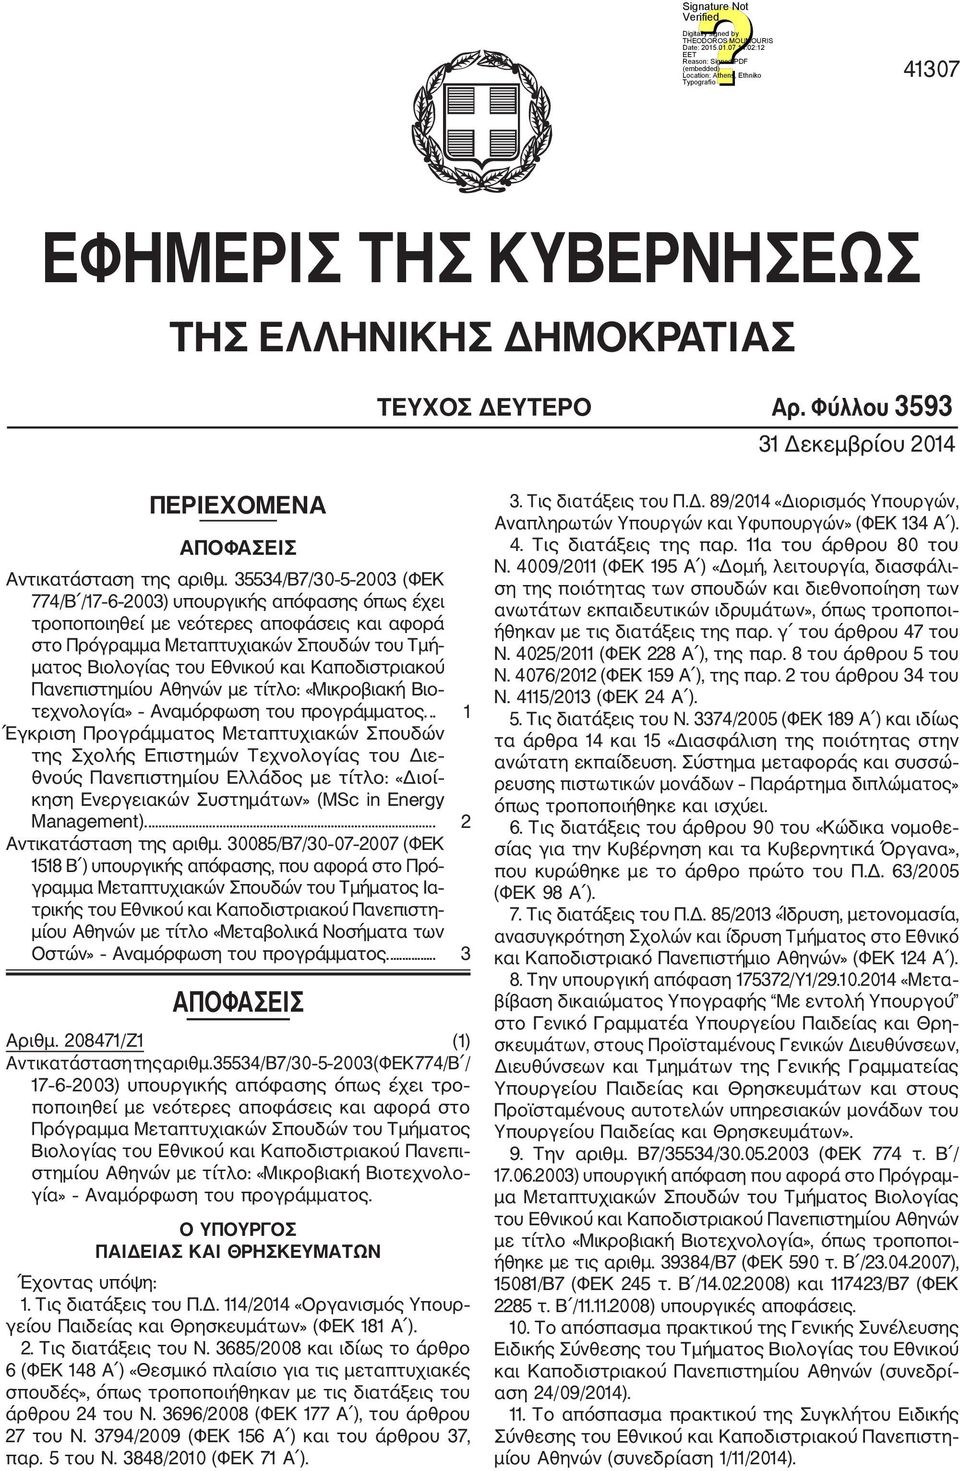 Καποδιστριακού Πανεπιστημίου Αθηνών με τίτλο: «Μικροβιακή Βιο τεχνολογία» Αναμόρφωση του προγράμματος.